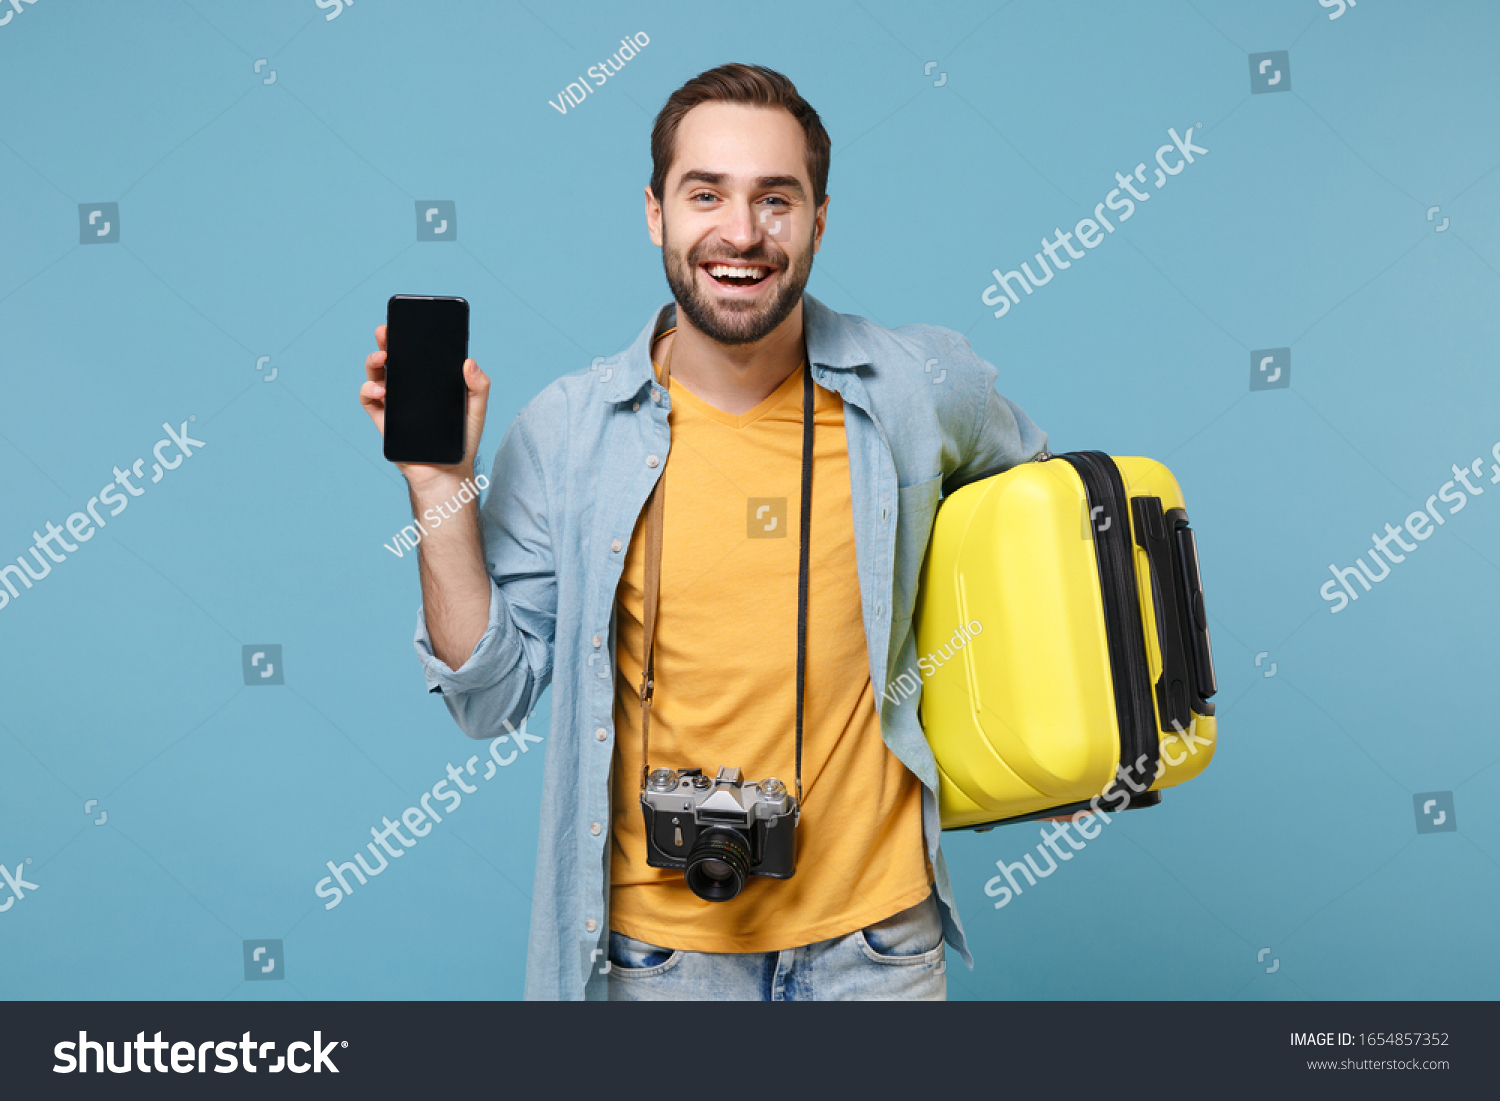 Smiling Traveler Tourist Man Yellow Clothes Stock Photo 1654857352 ...